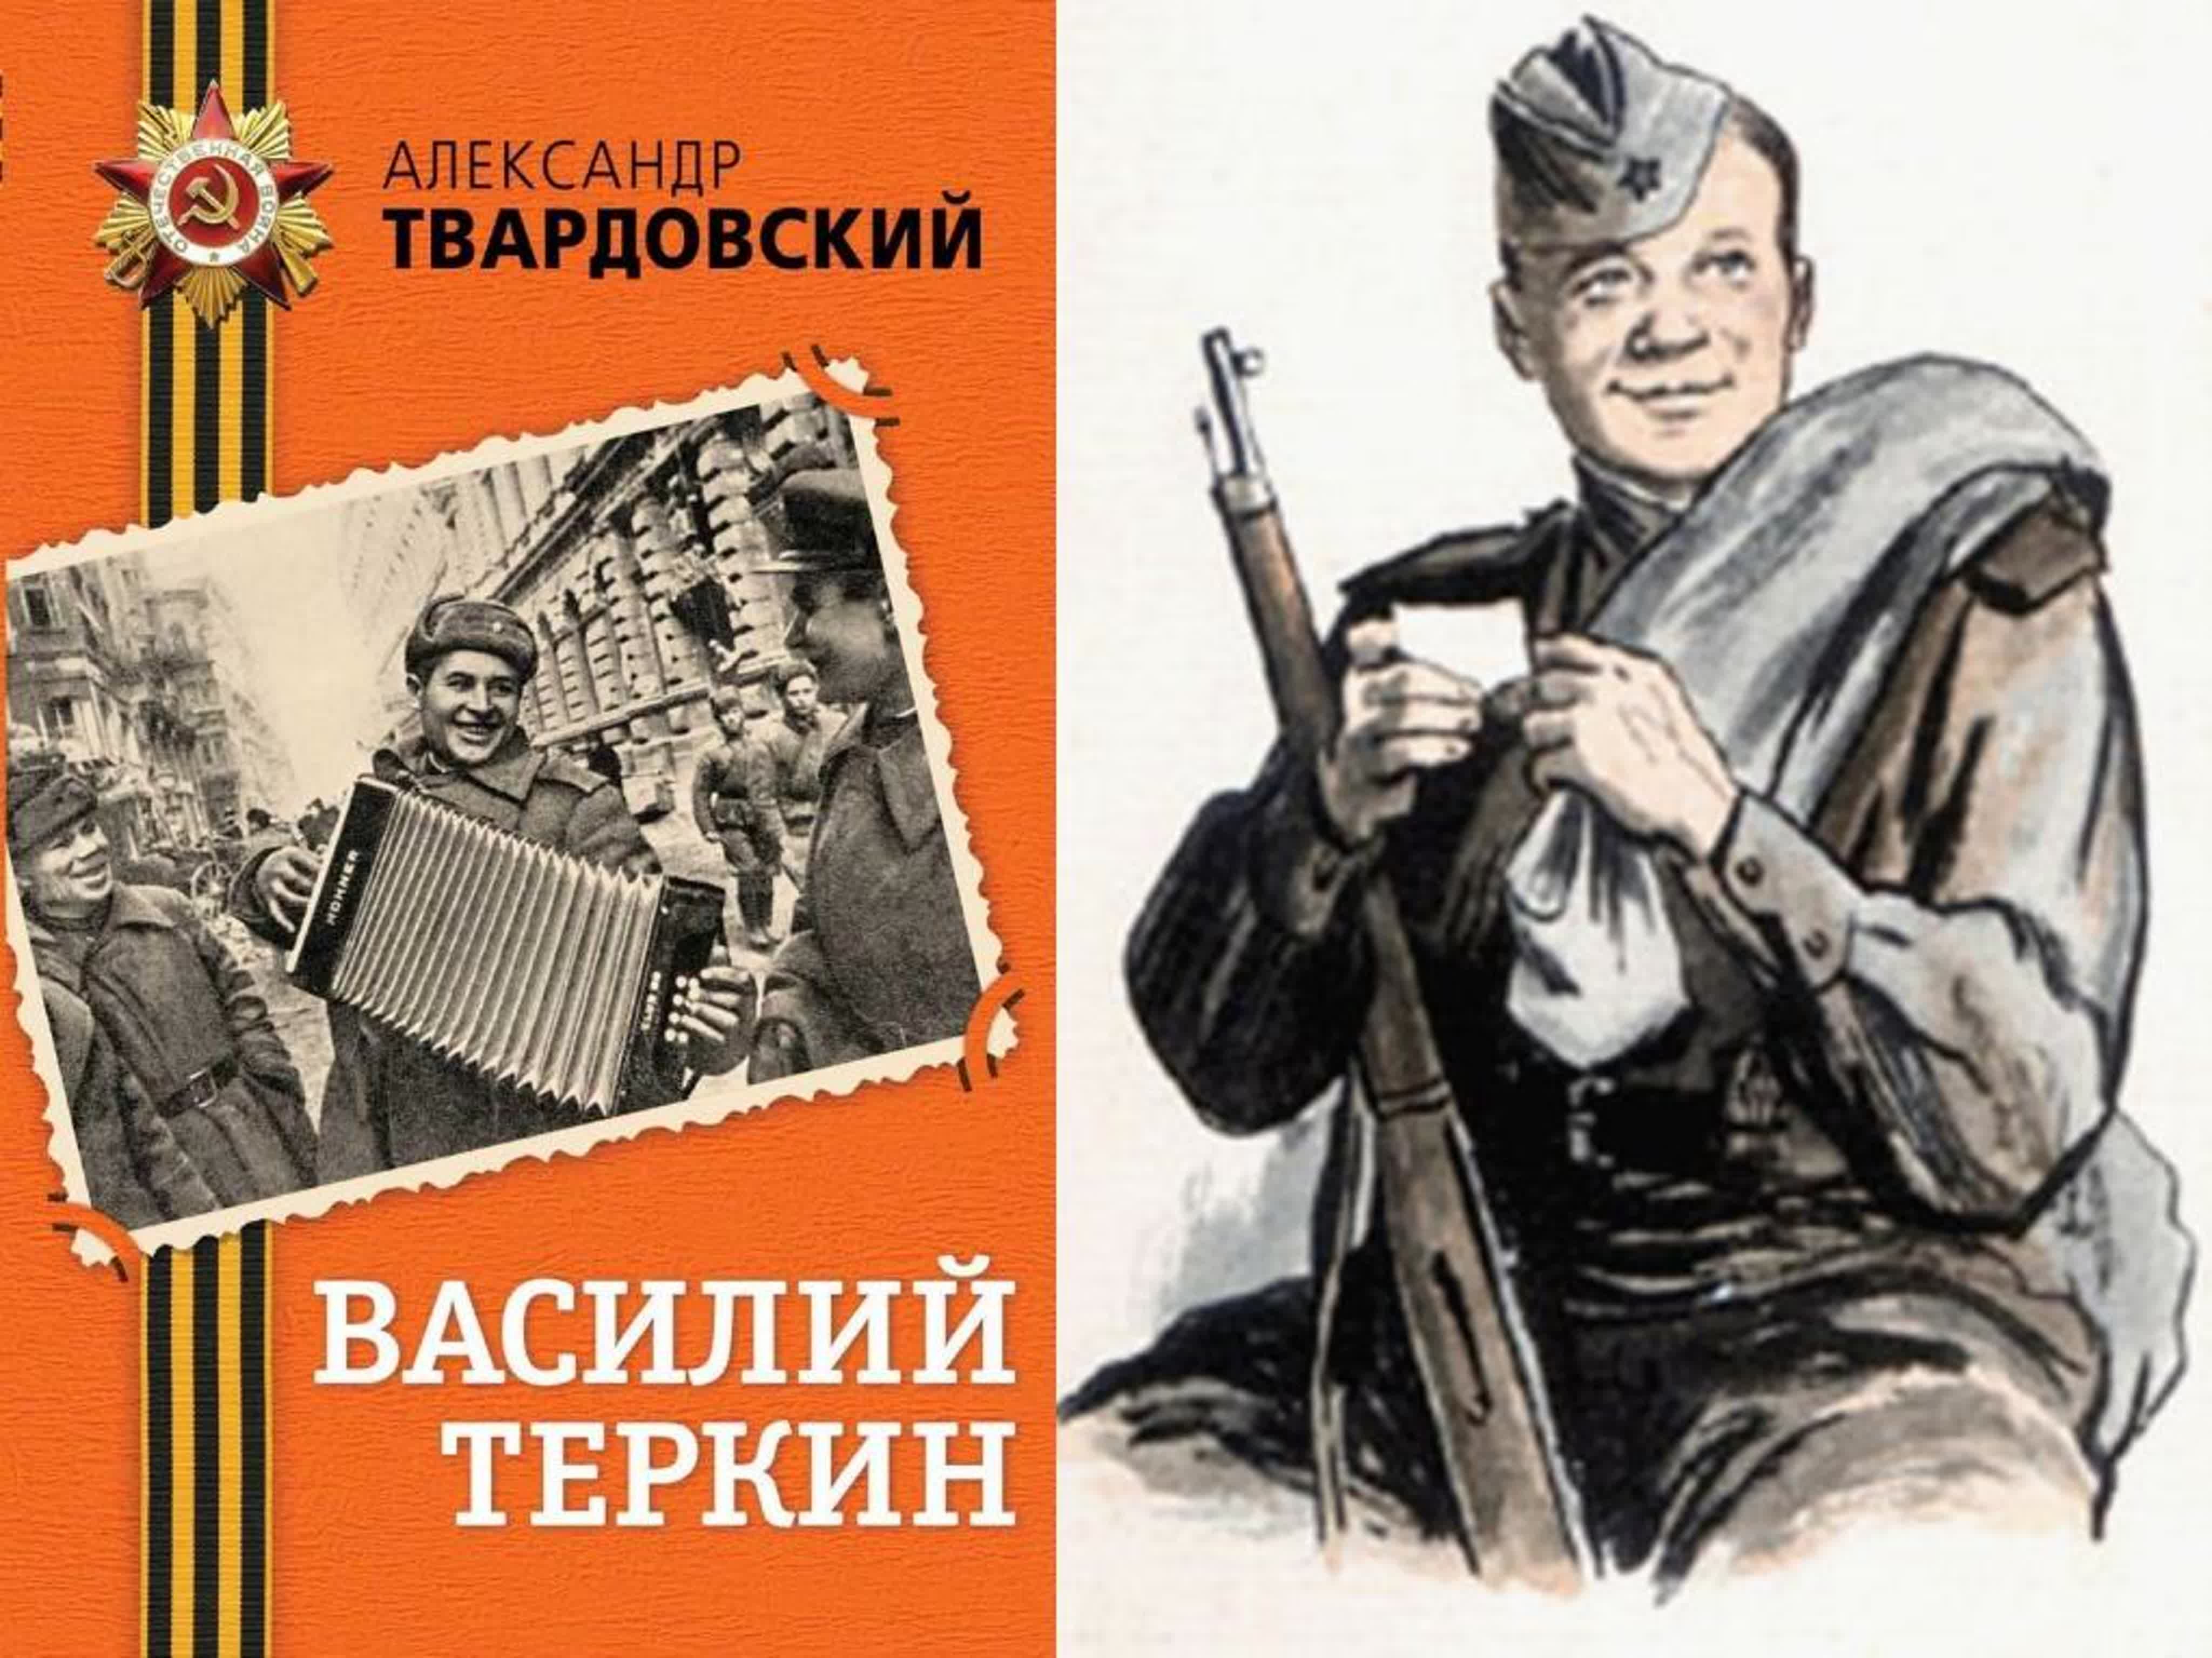 Изящная фигура Василия Теркина - воплощение эстетического идеала